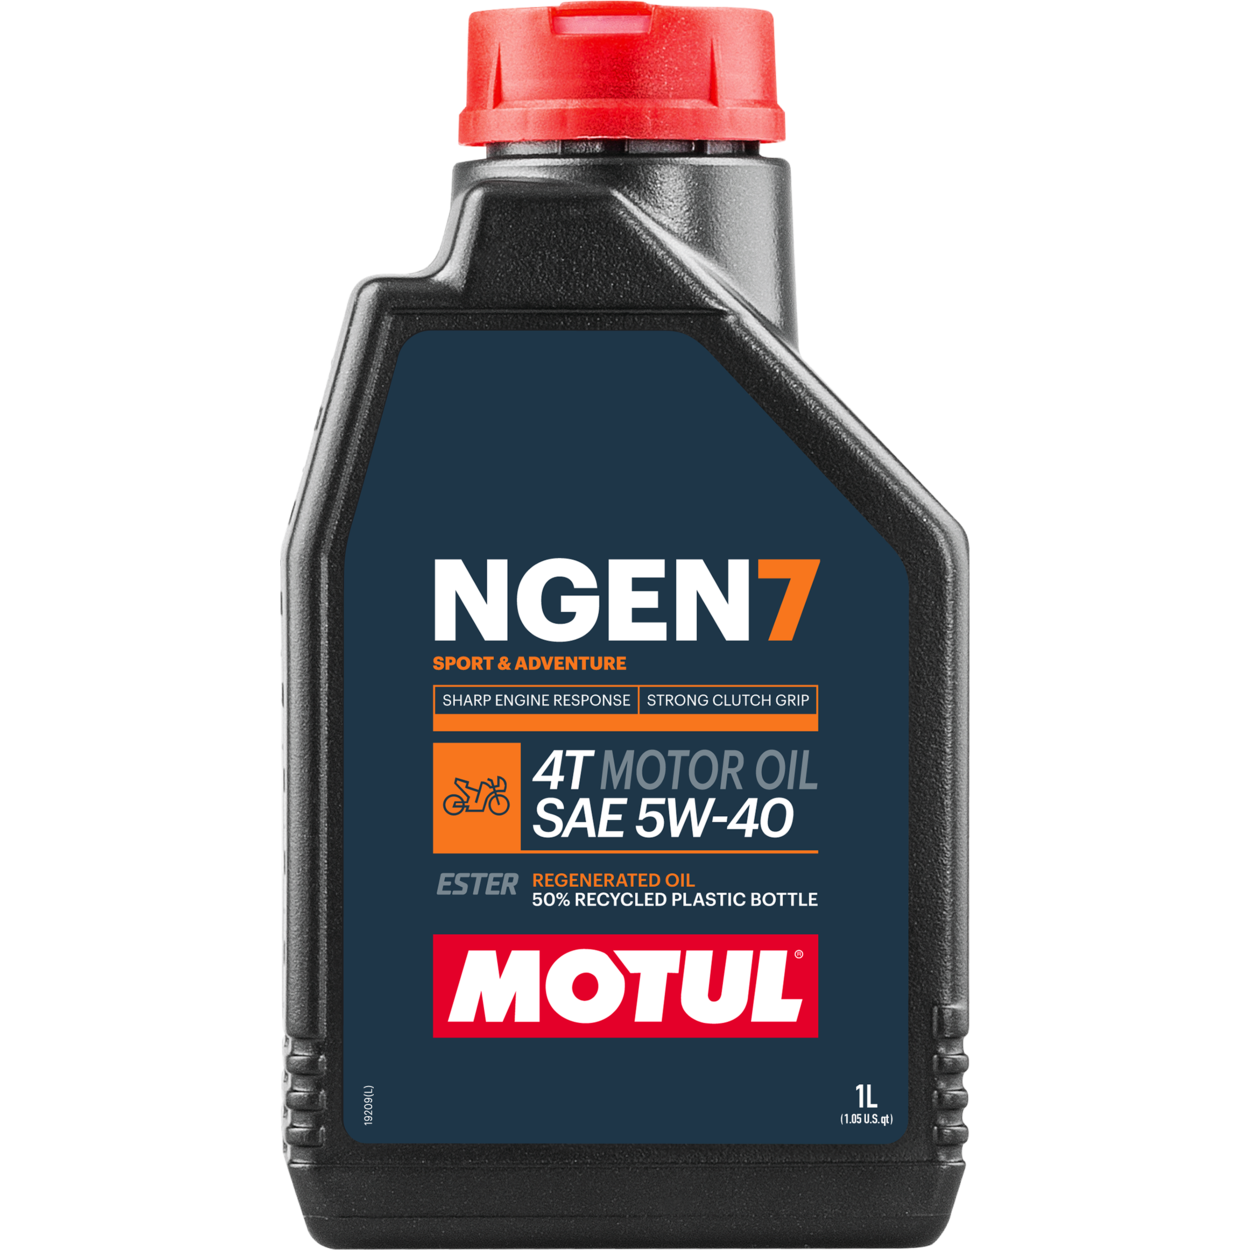 111826-1 MOTUL NGEN 7 5W-40 4T est la meilleure huile moteur 4 temps de sa catégorie, basée sur une combinaison d'huiles de base vierges et d'additifs les plus fins, mélangés à des esters synthétiques et des huiles régénérées de haute qualité.